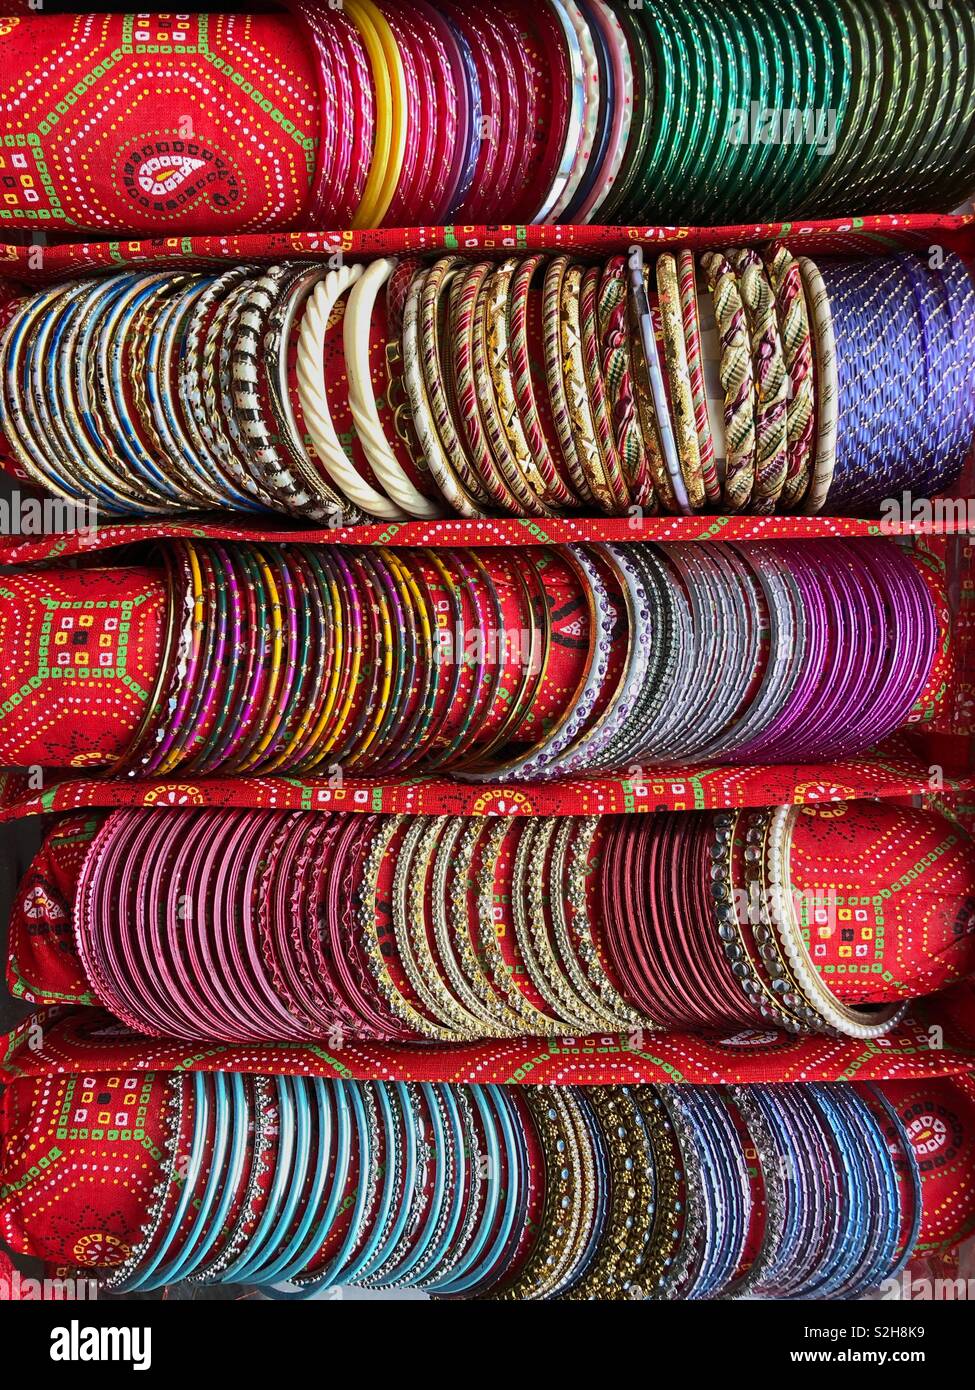 Reihen von bunten Indischen Armreifen in einem speziell angefertigten Tragetasche. Stockfoto